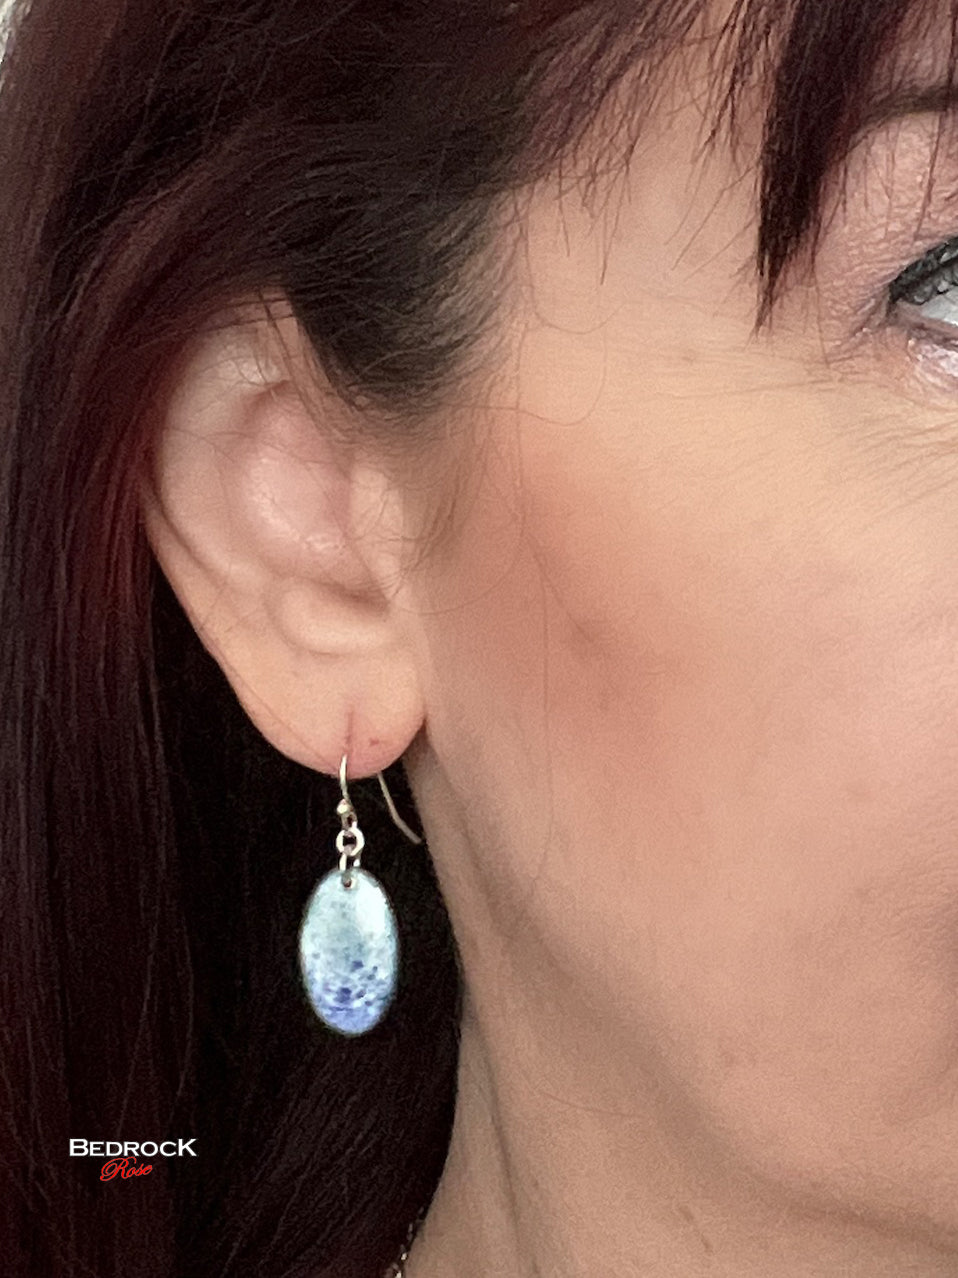 Blue on white speckled dangling earrings.